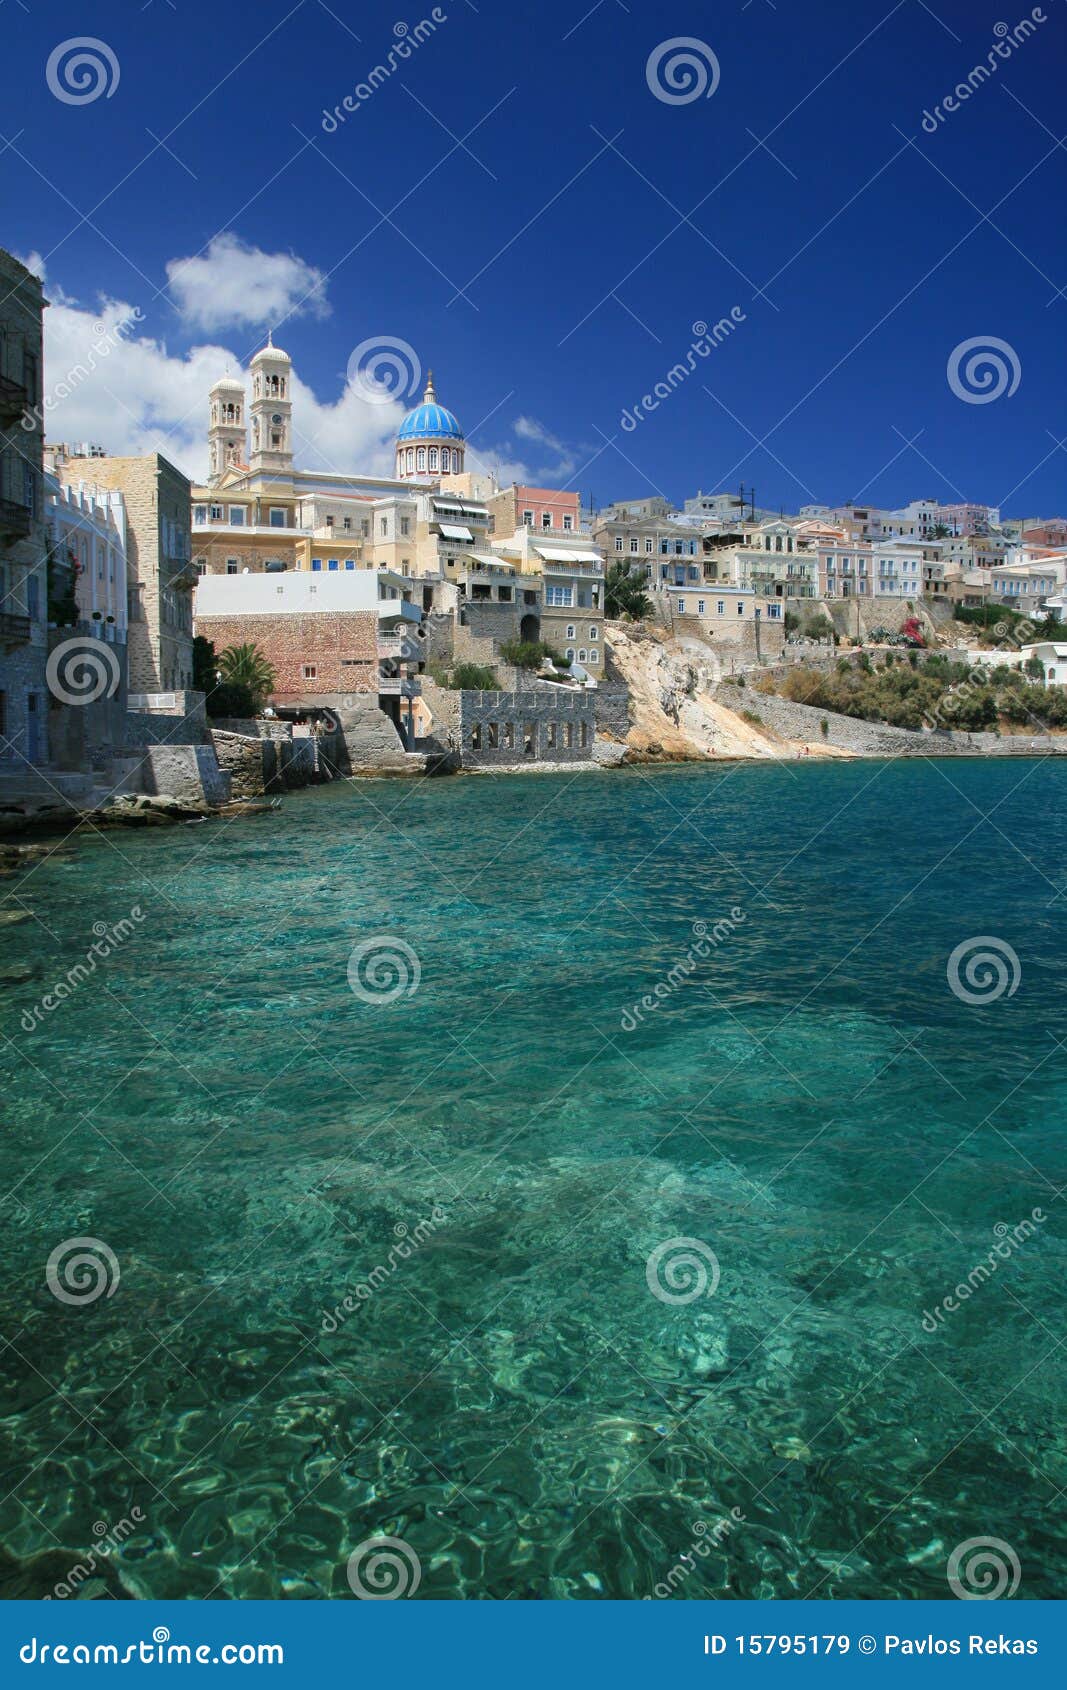 greece, syros island